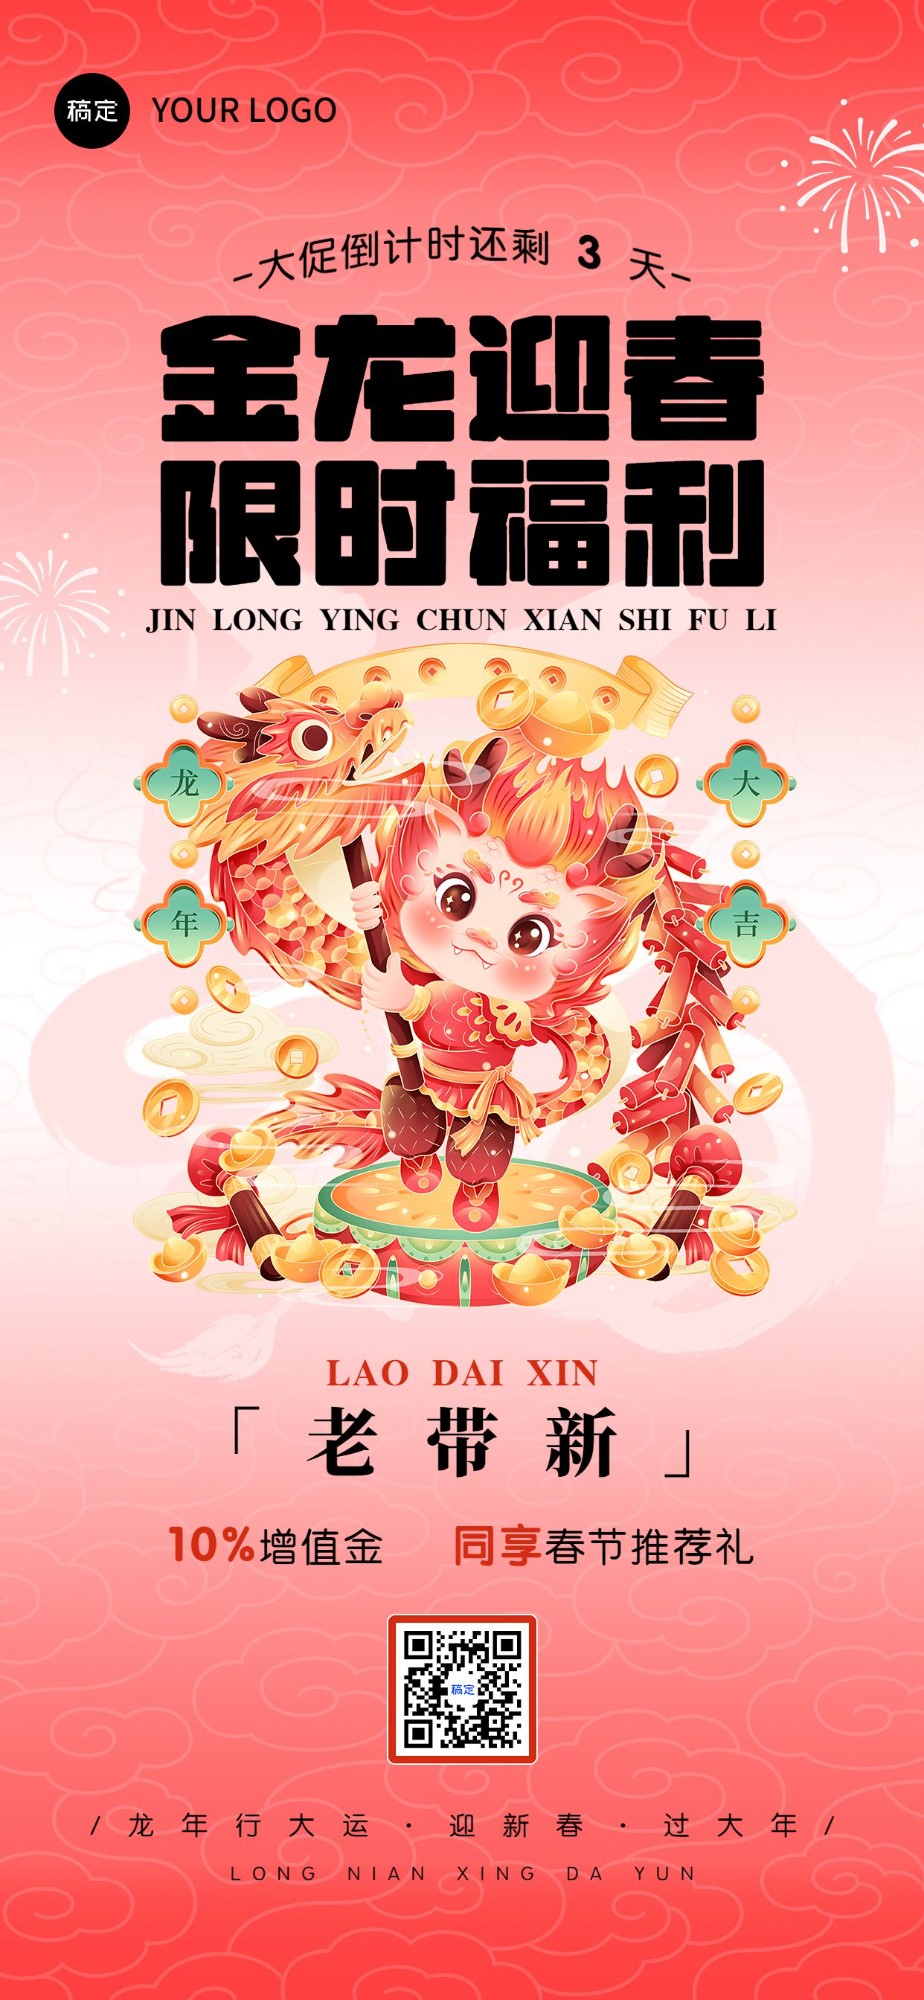 春节促销活动倒计时全屏竖版海报套系小龙人舞龙插画预览效果